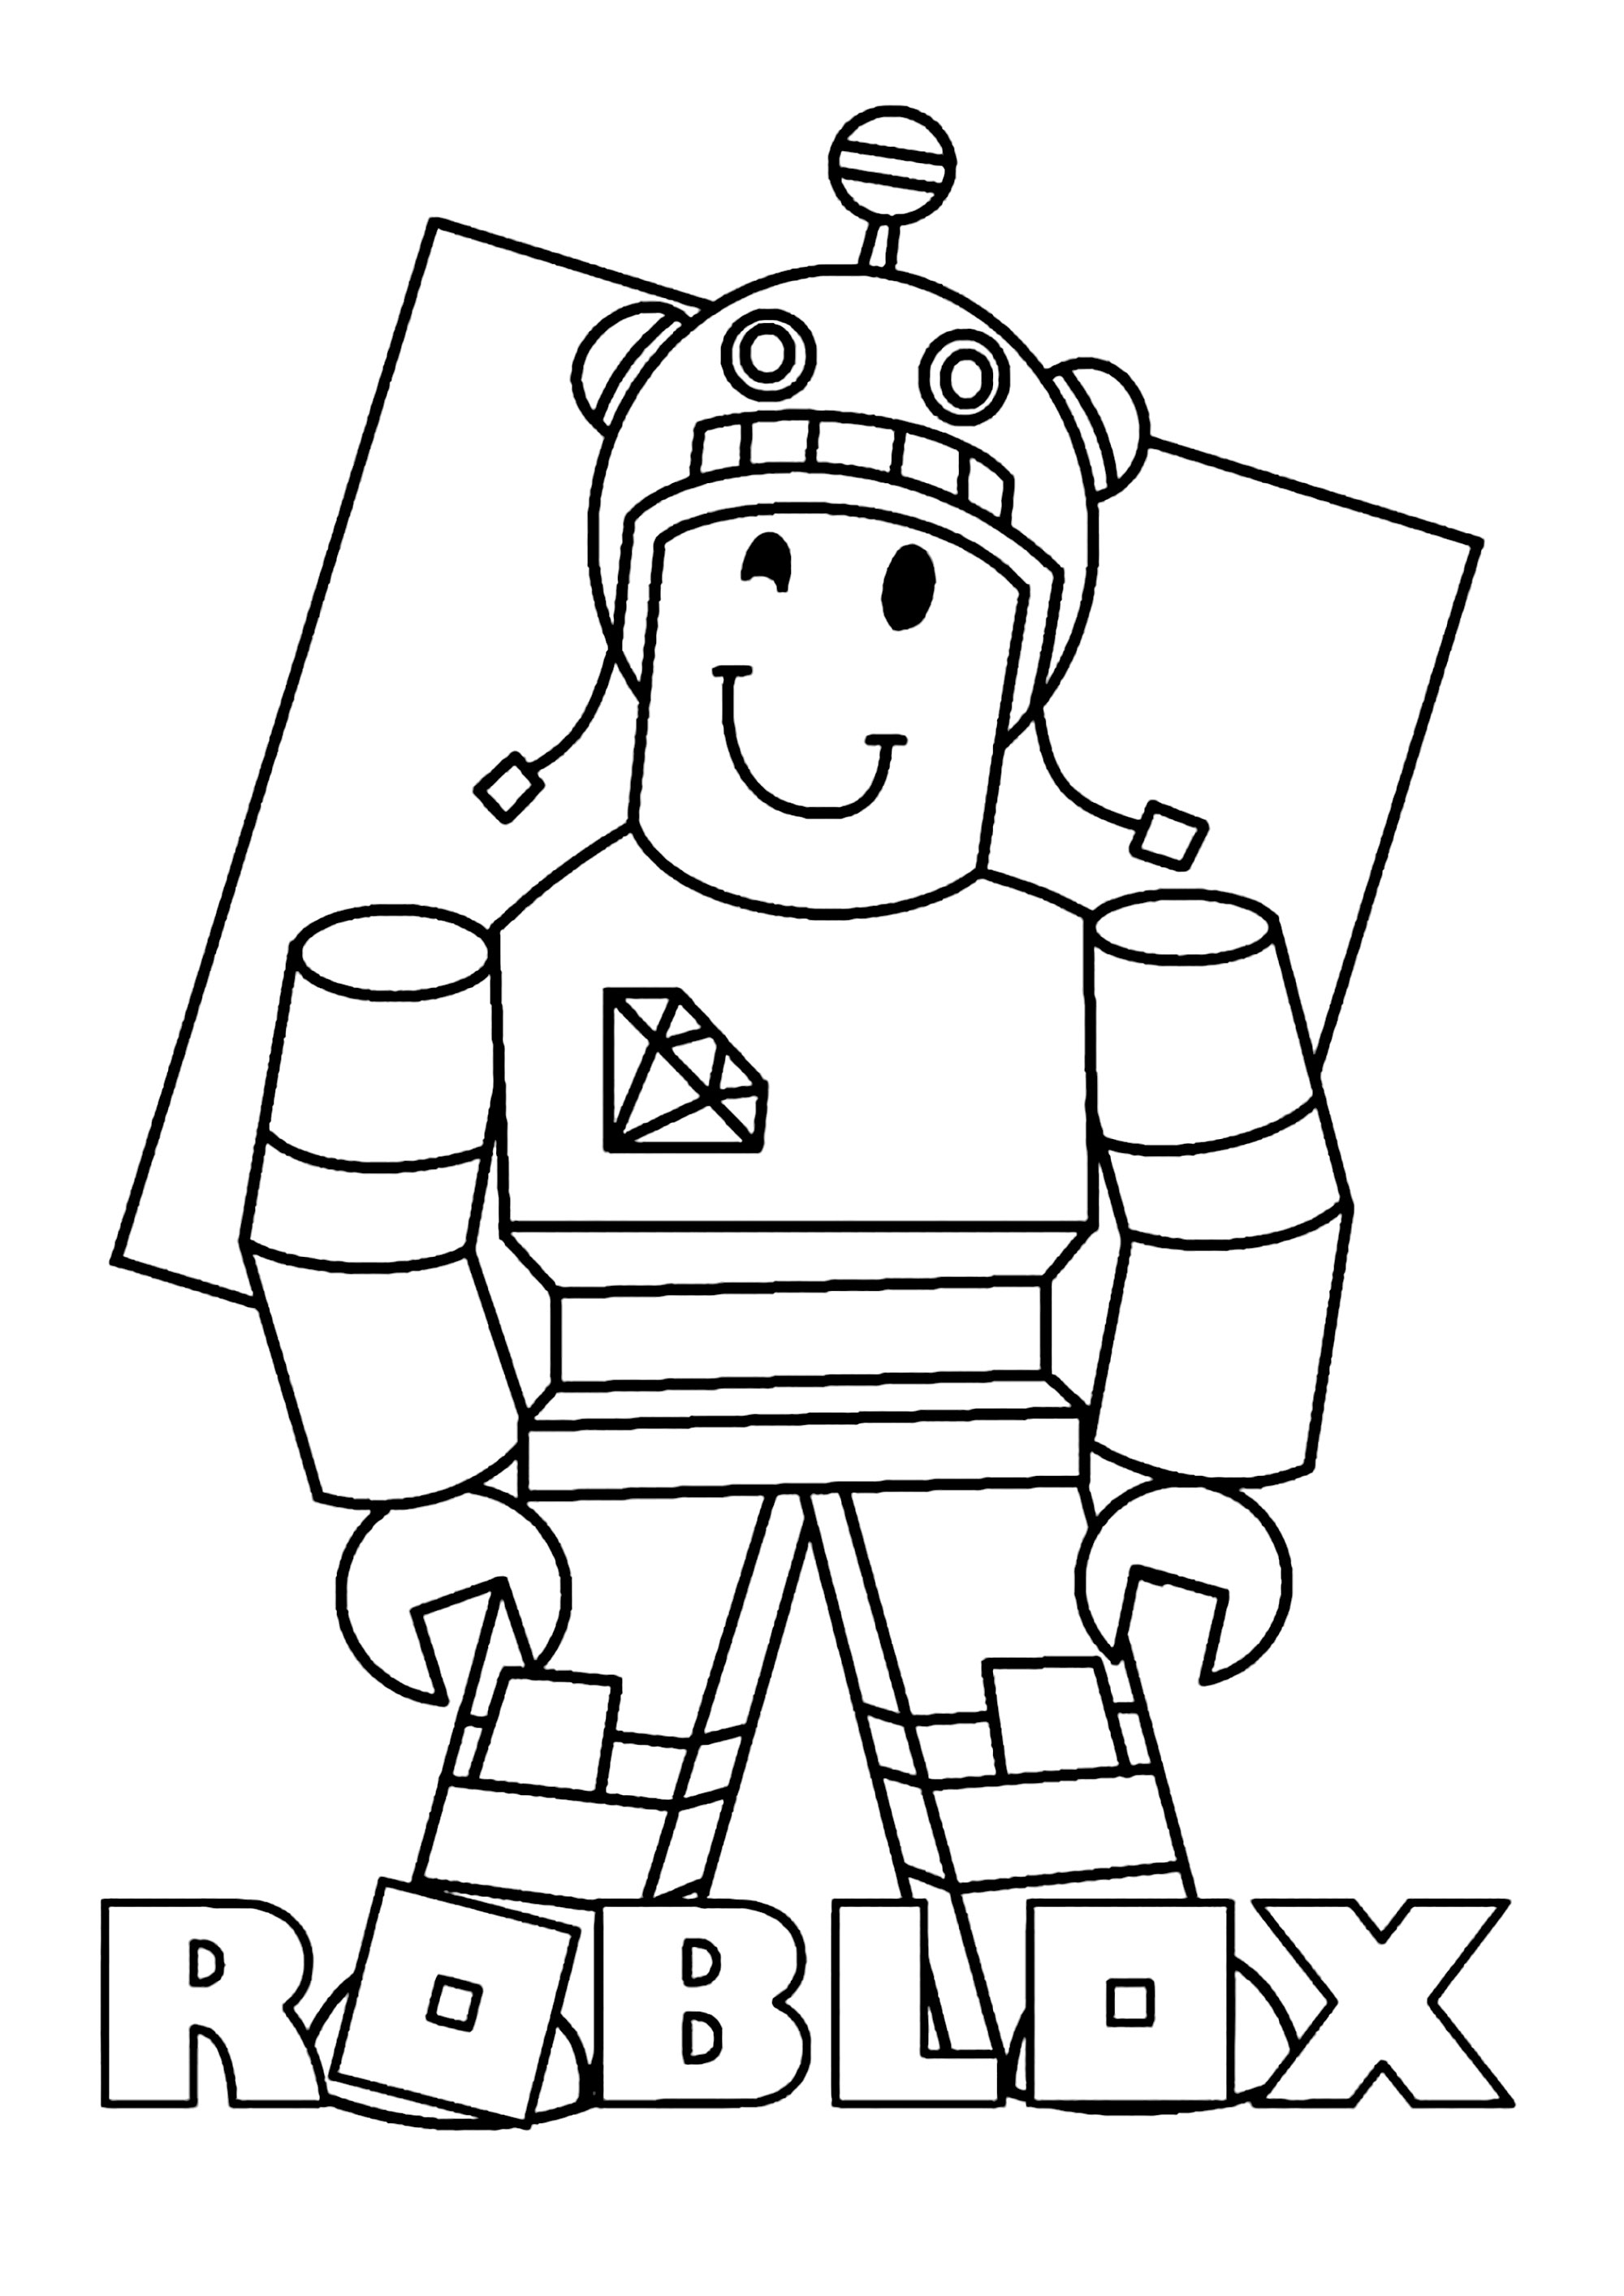 Roblox: personagem com um capacete - Roblox - Just Color Crianças : Páginas  para colorir para crianças